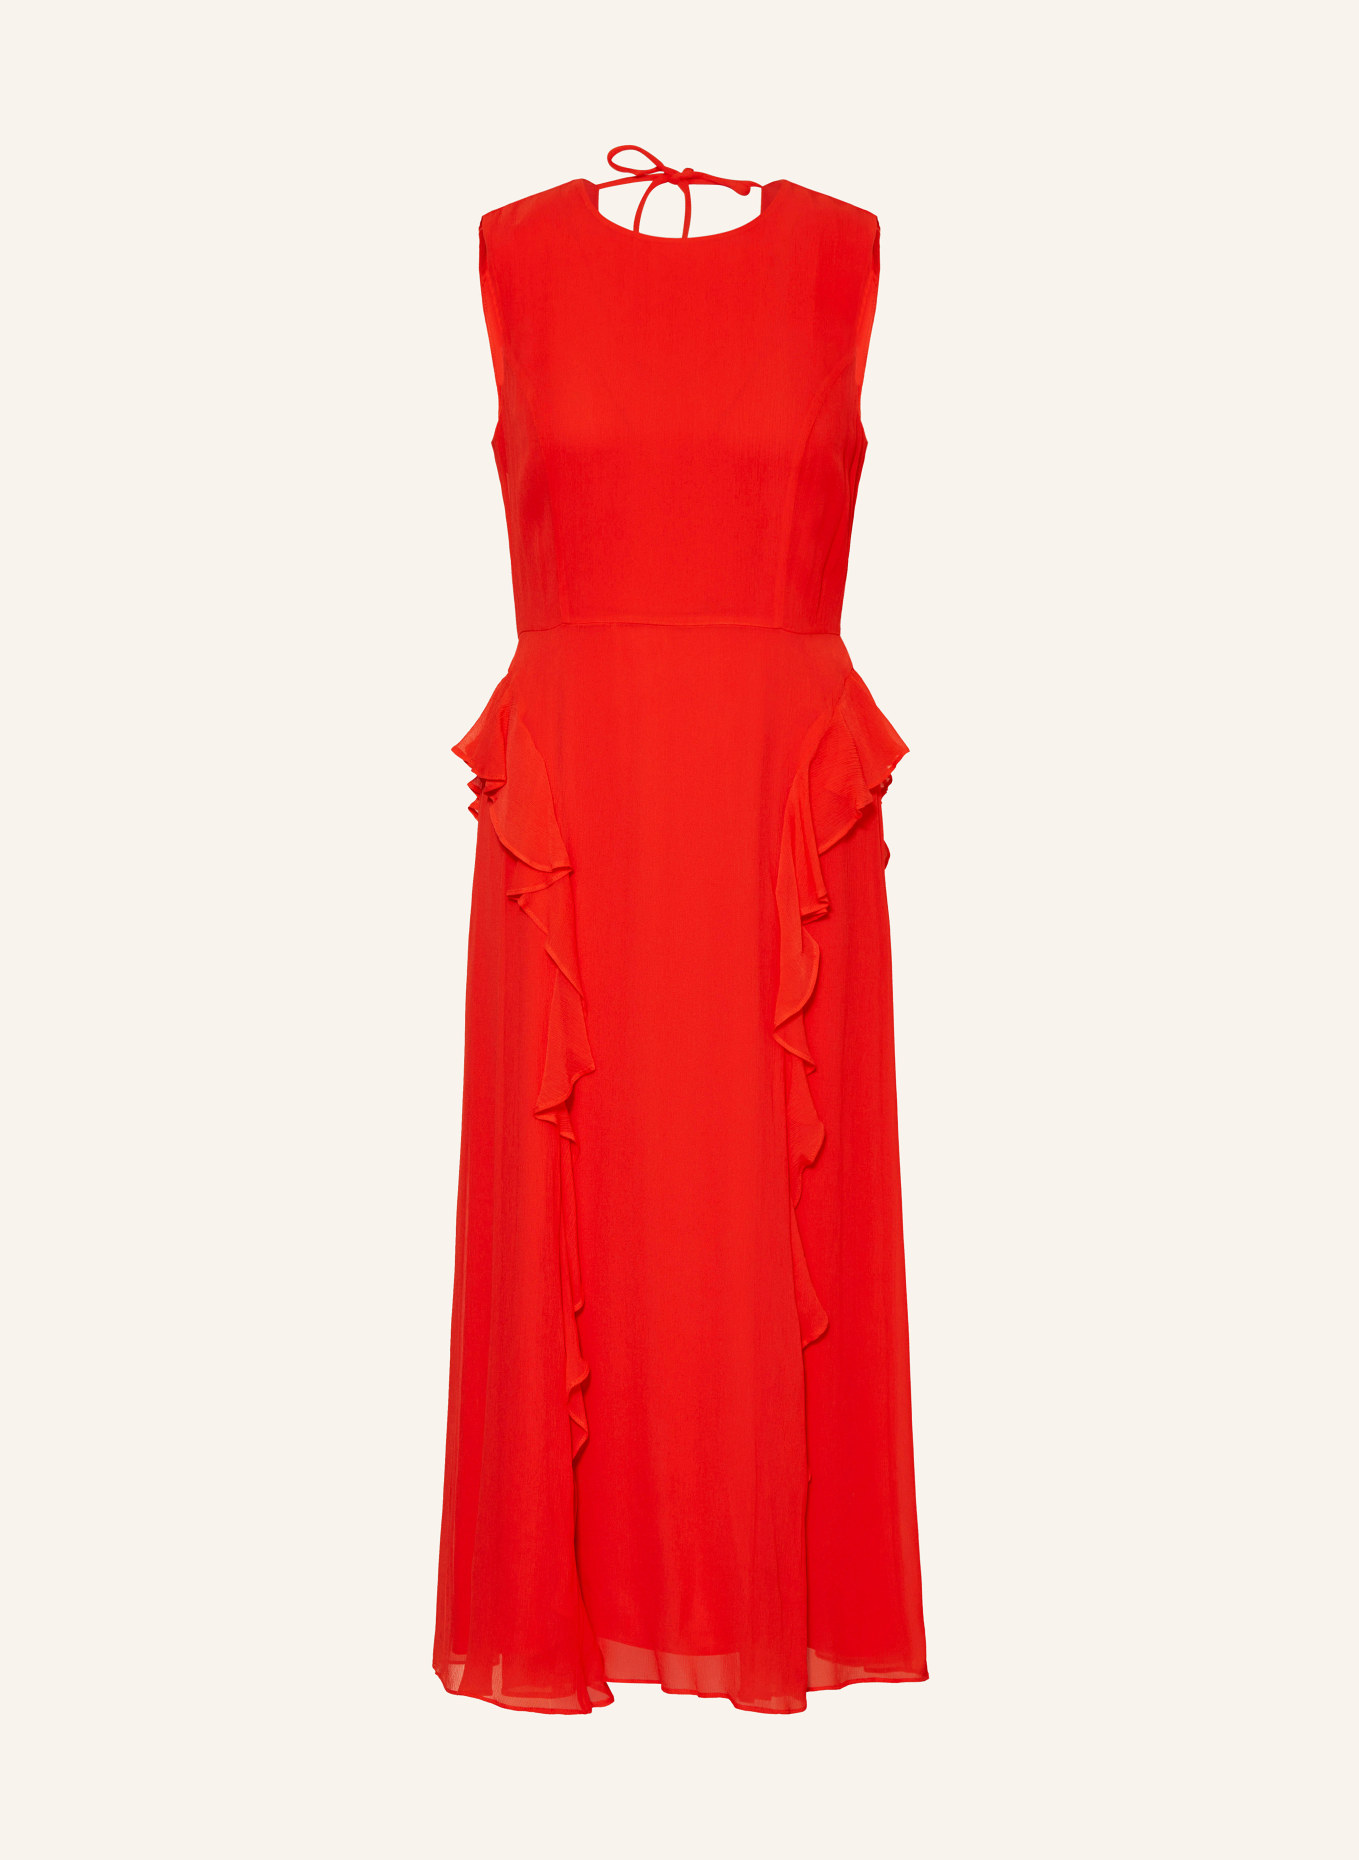 WHISTLES Kleid NELLIE mit Volants, Farbe: ROT (Bild 1)